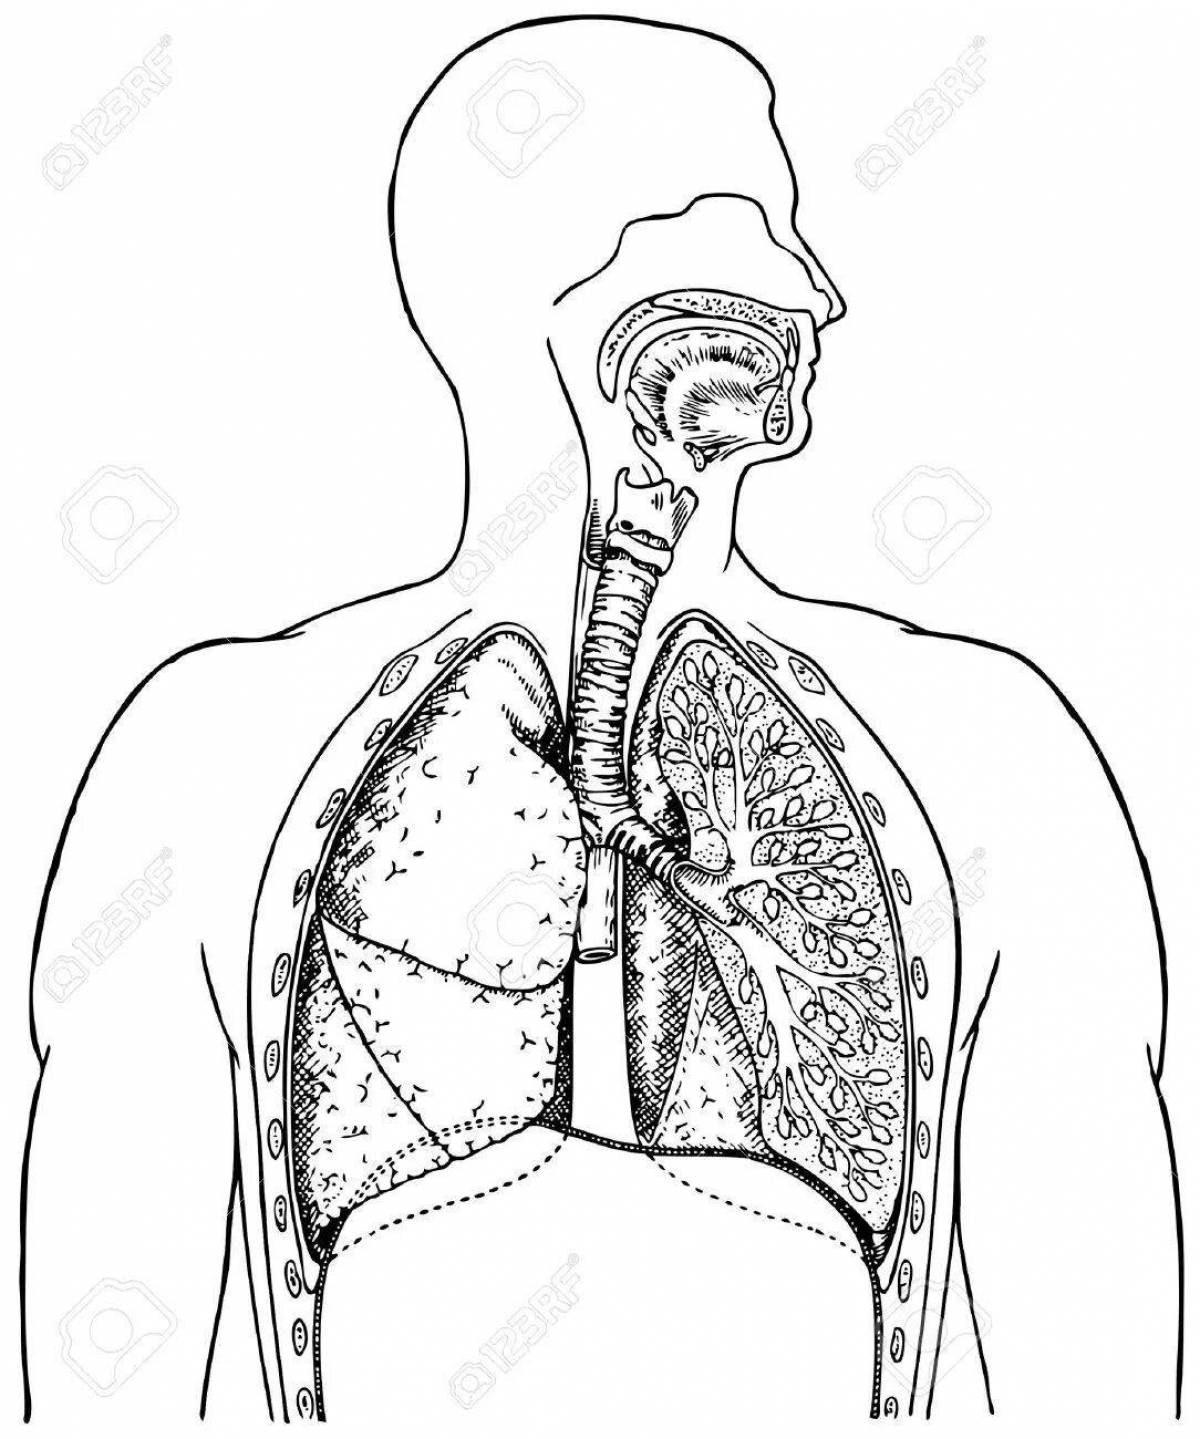 Творческая страница раскраски дыхательной системы